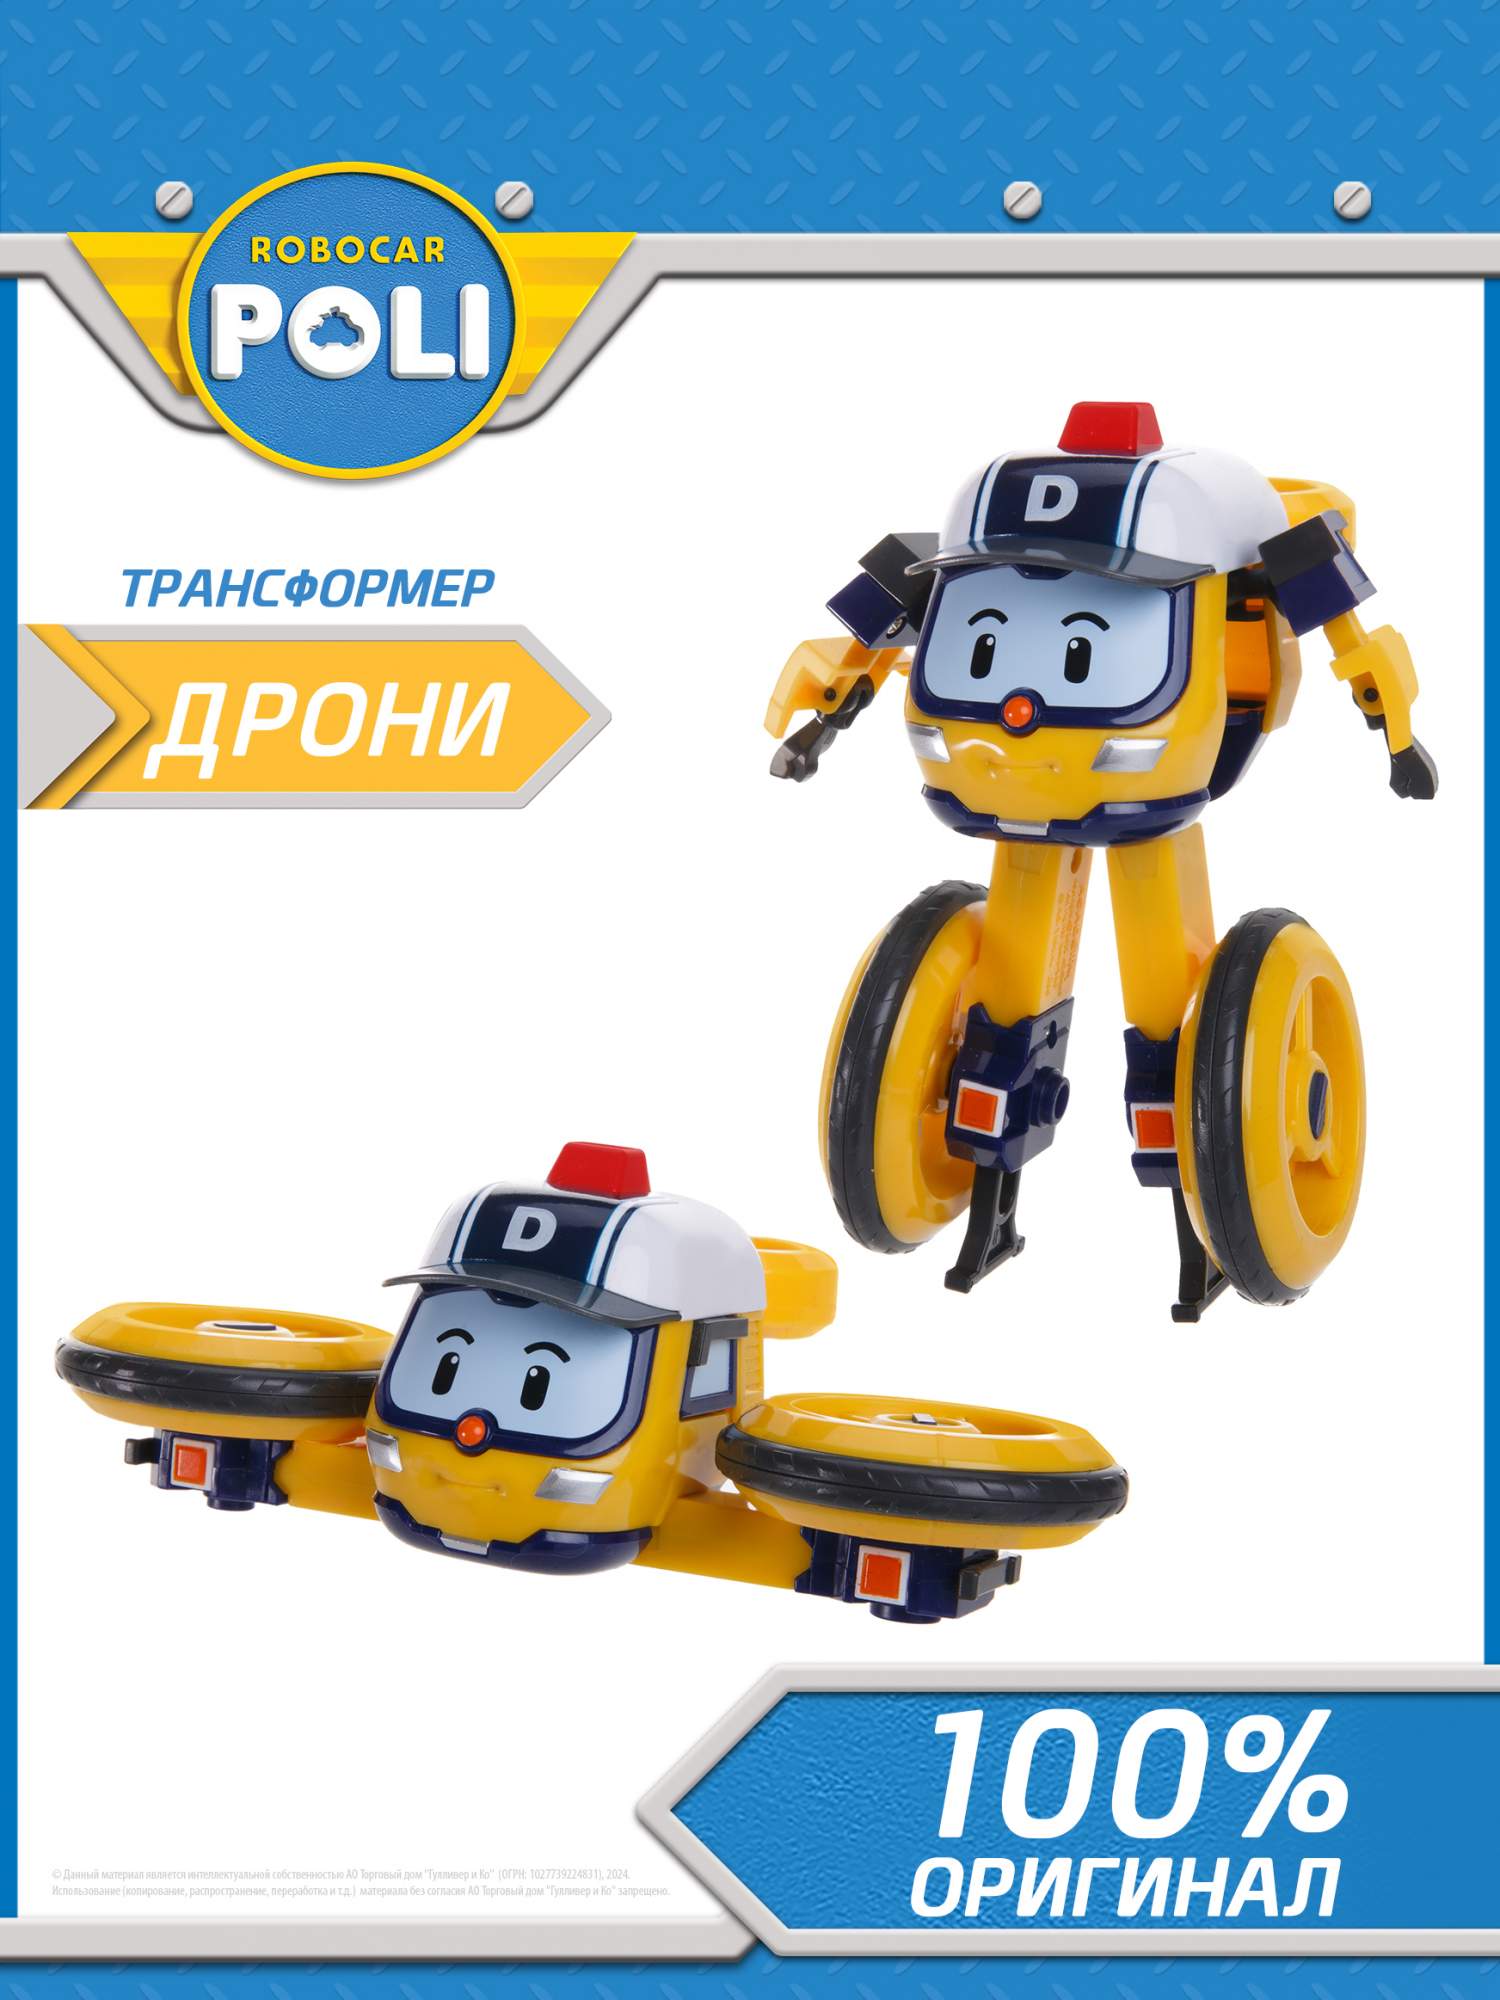 Робот-трансформер Robocar Poli, Дрони 10 см робот трансформер robocar poli поли на радиоуправлении управляется в форме робота и машины